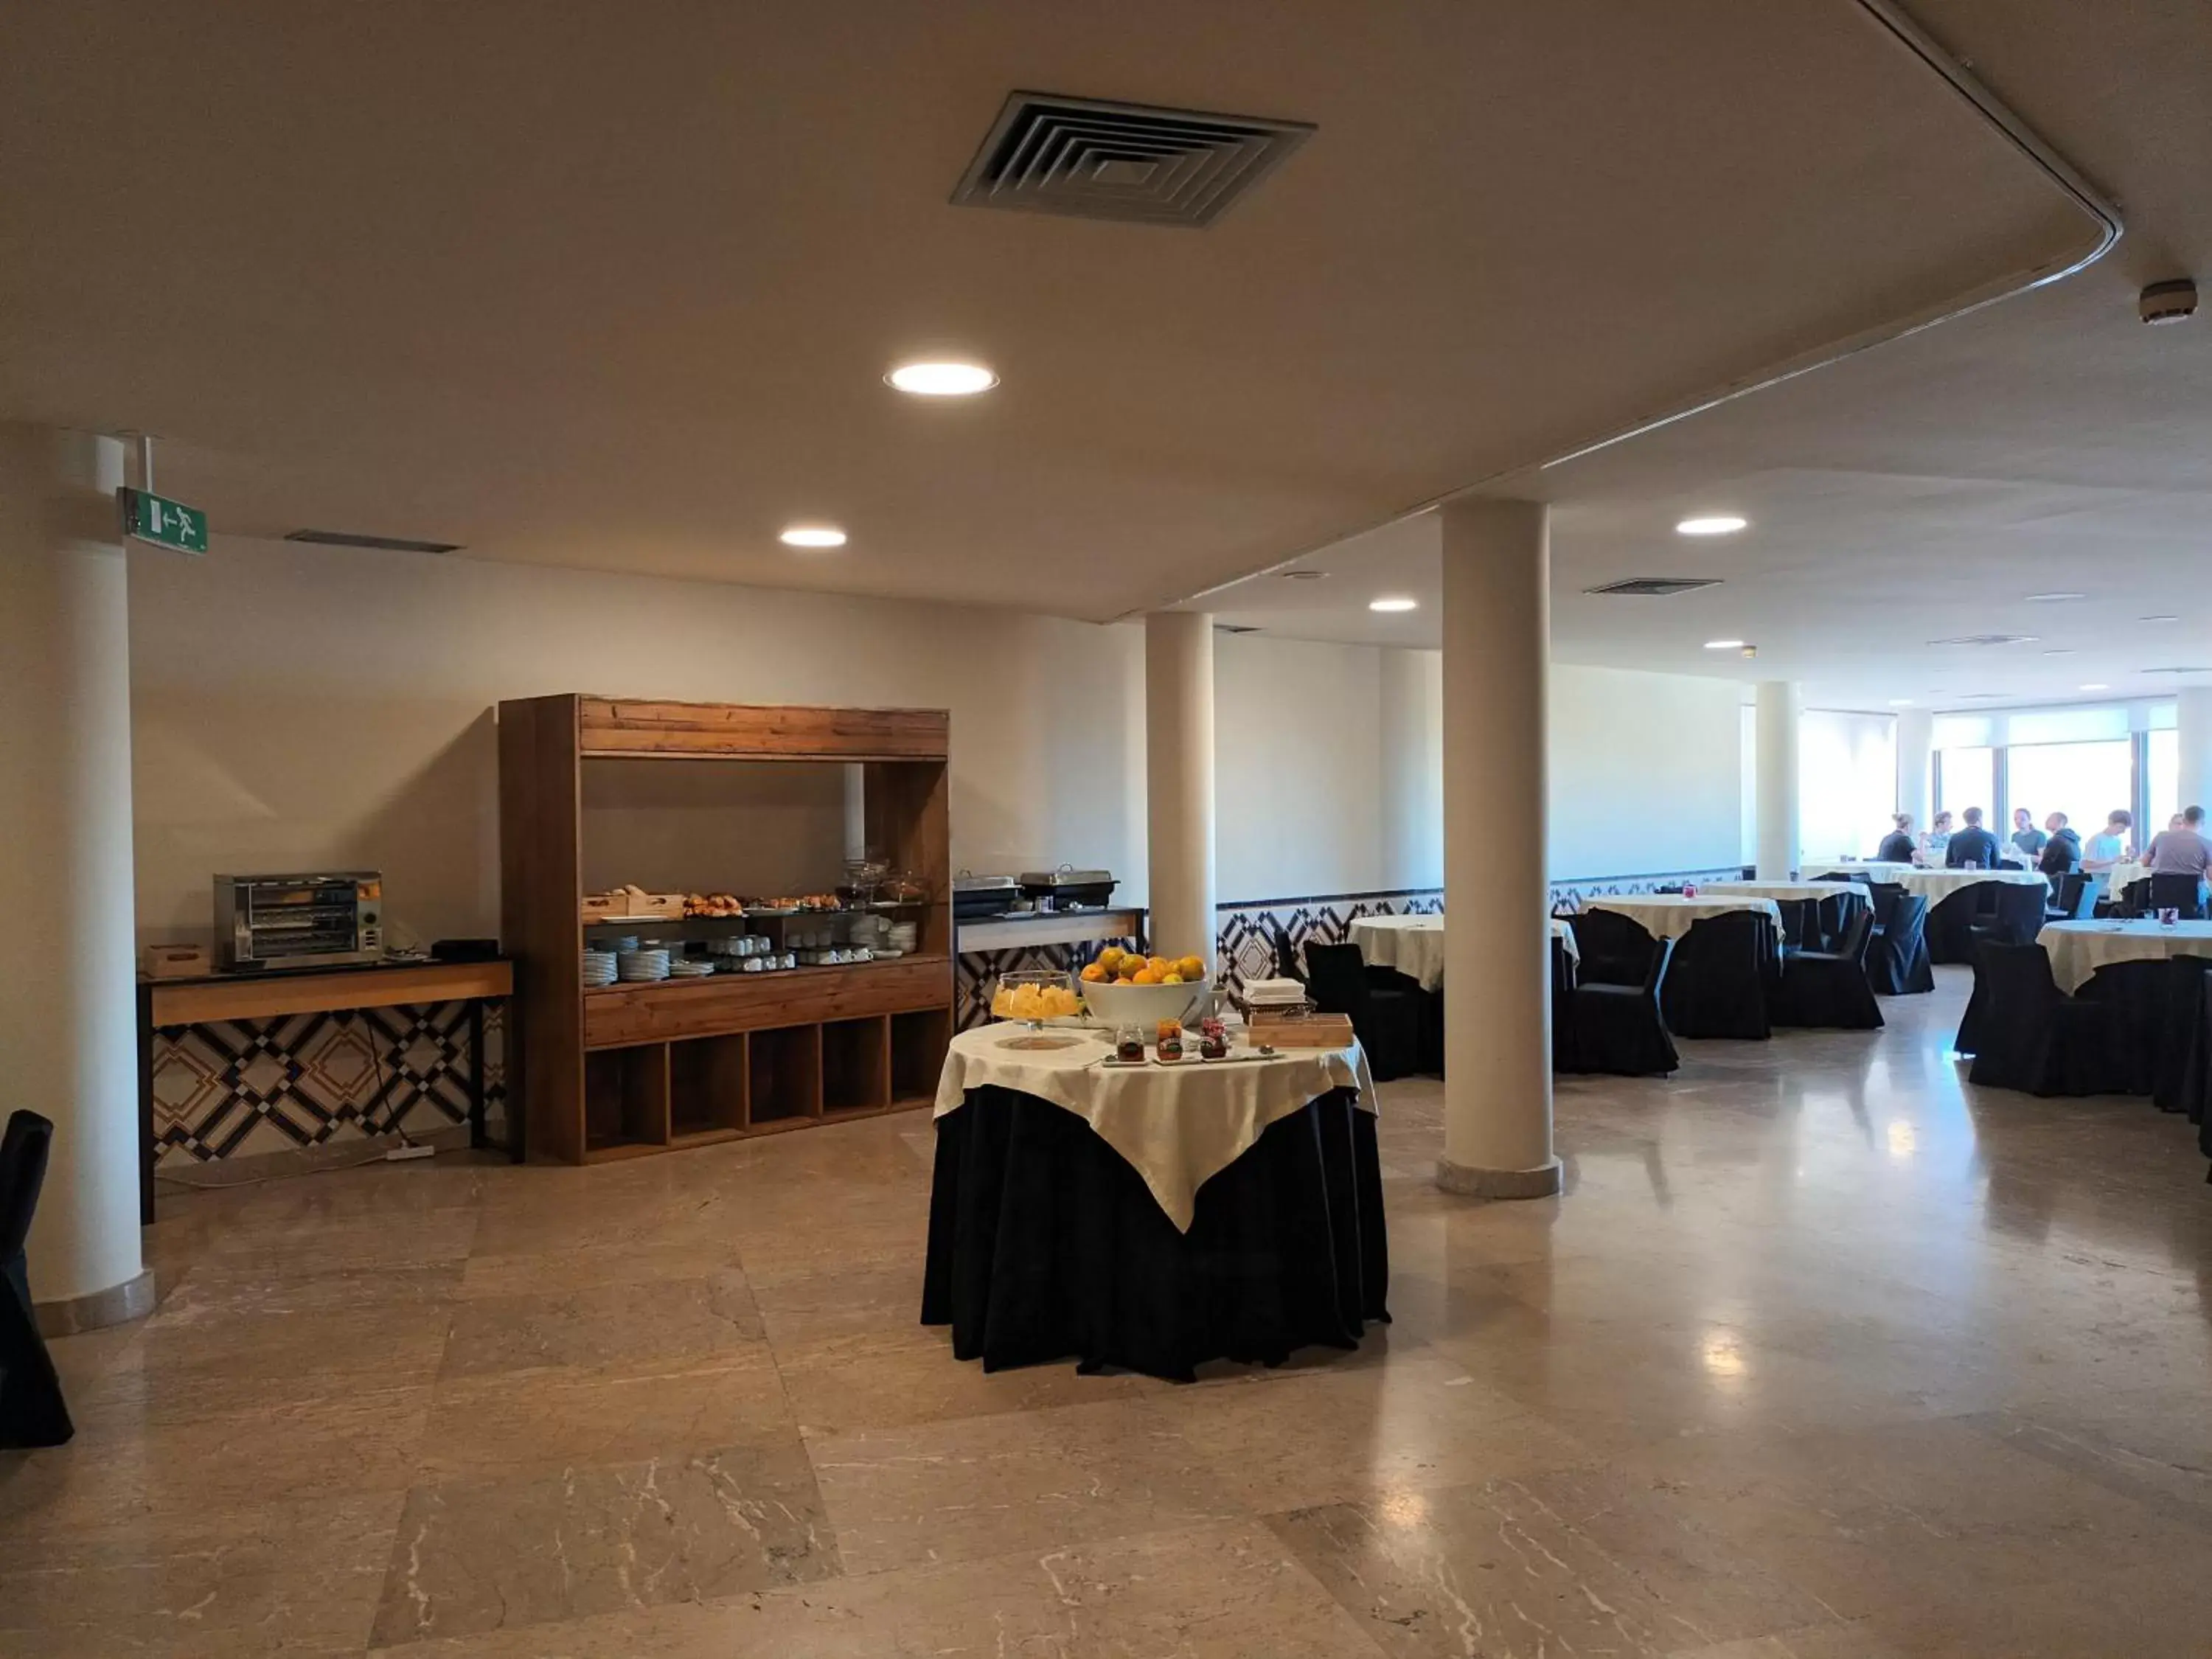 Buffet breakfast, Restaurant/Places to Eat in Vilar Oporto Hotel